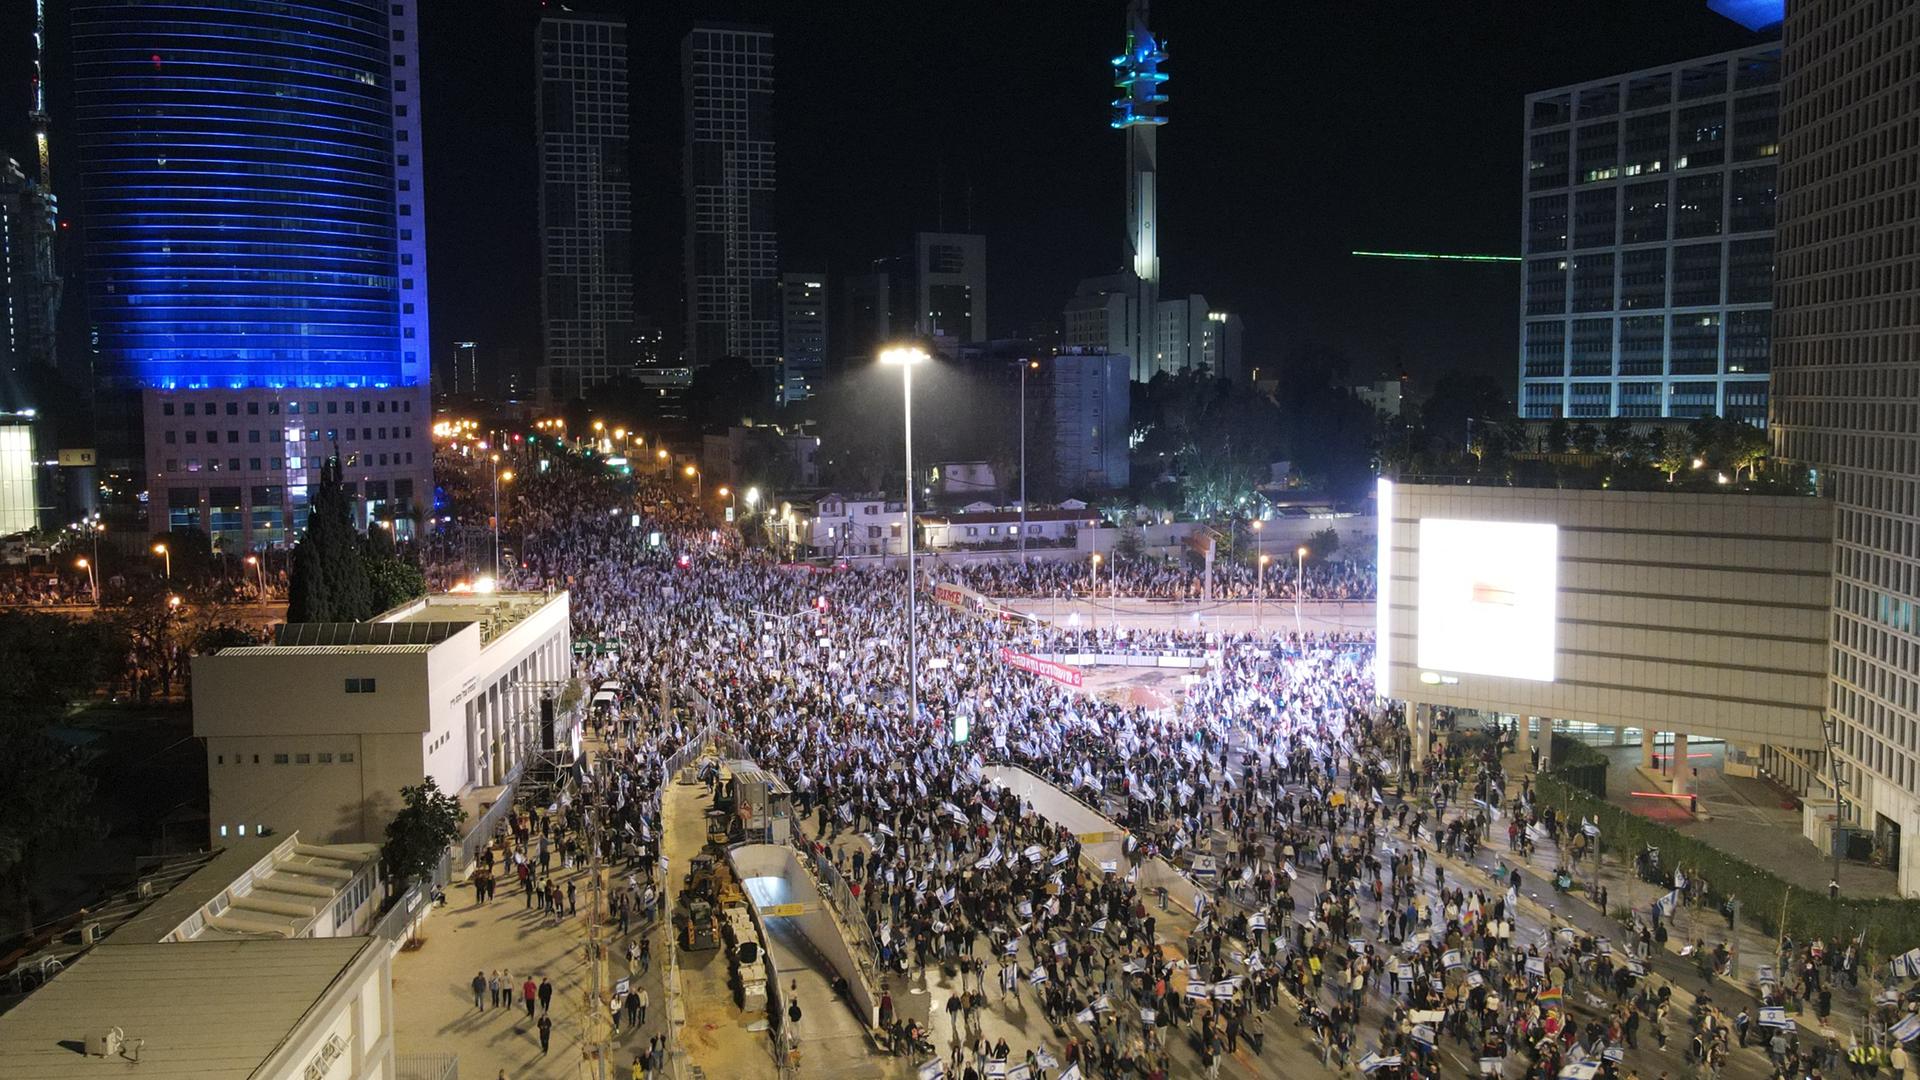 Das Bild zeigt von oben eine große Menschenmenge auf einem Platz in der Nacht.